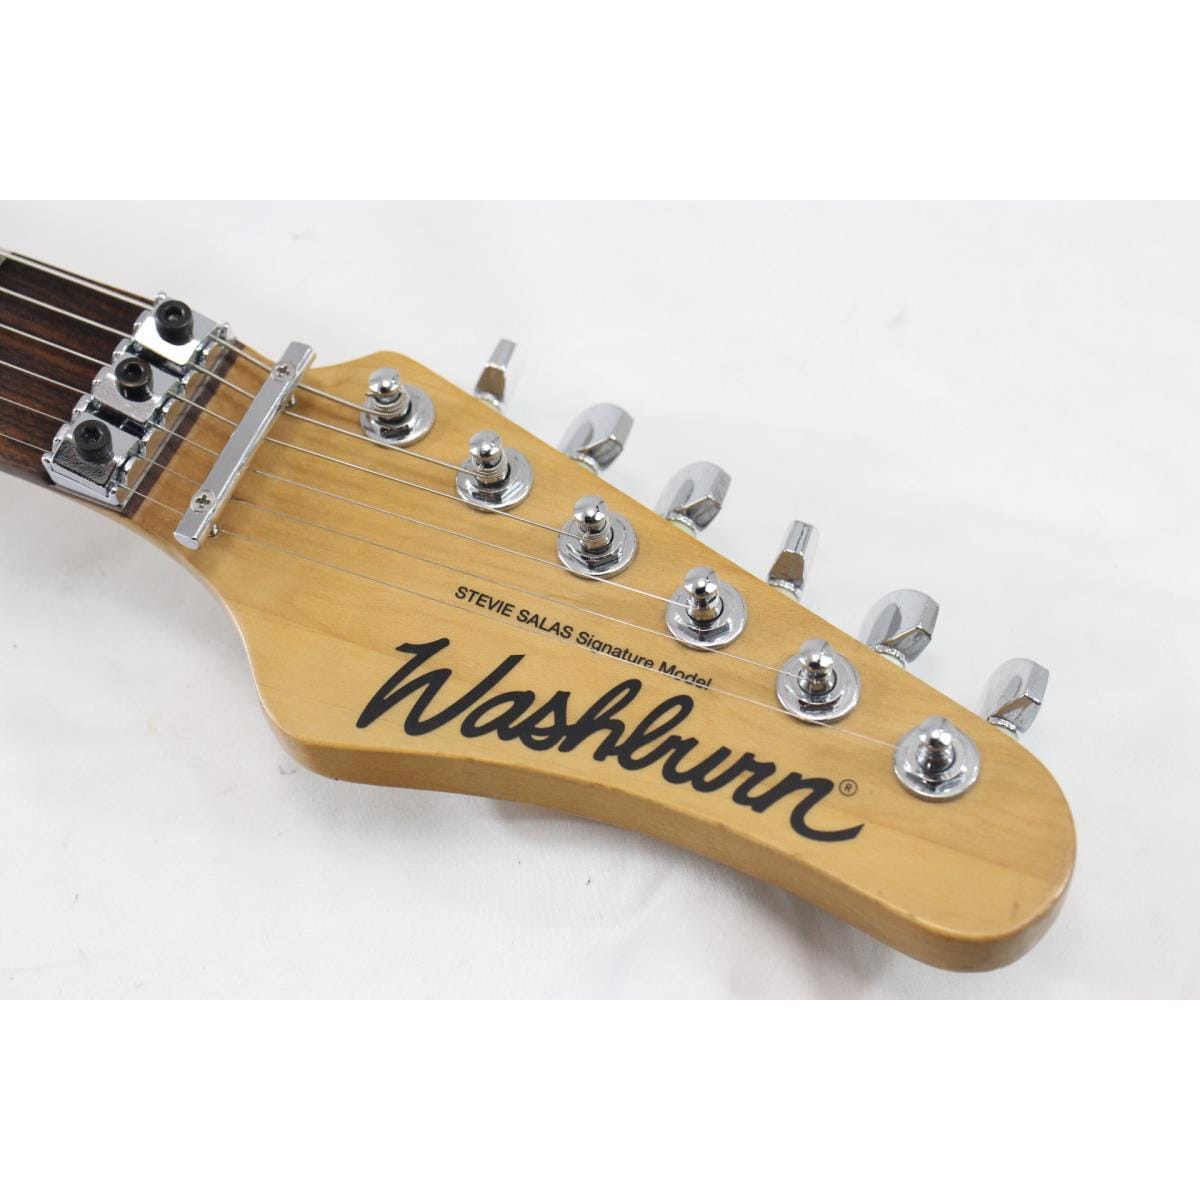 ワッシュバーン ギター スティービー・サラスモデル MG722